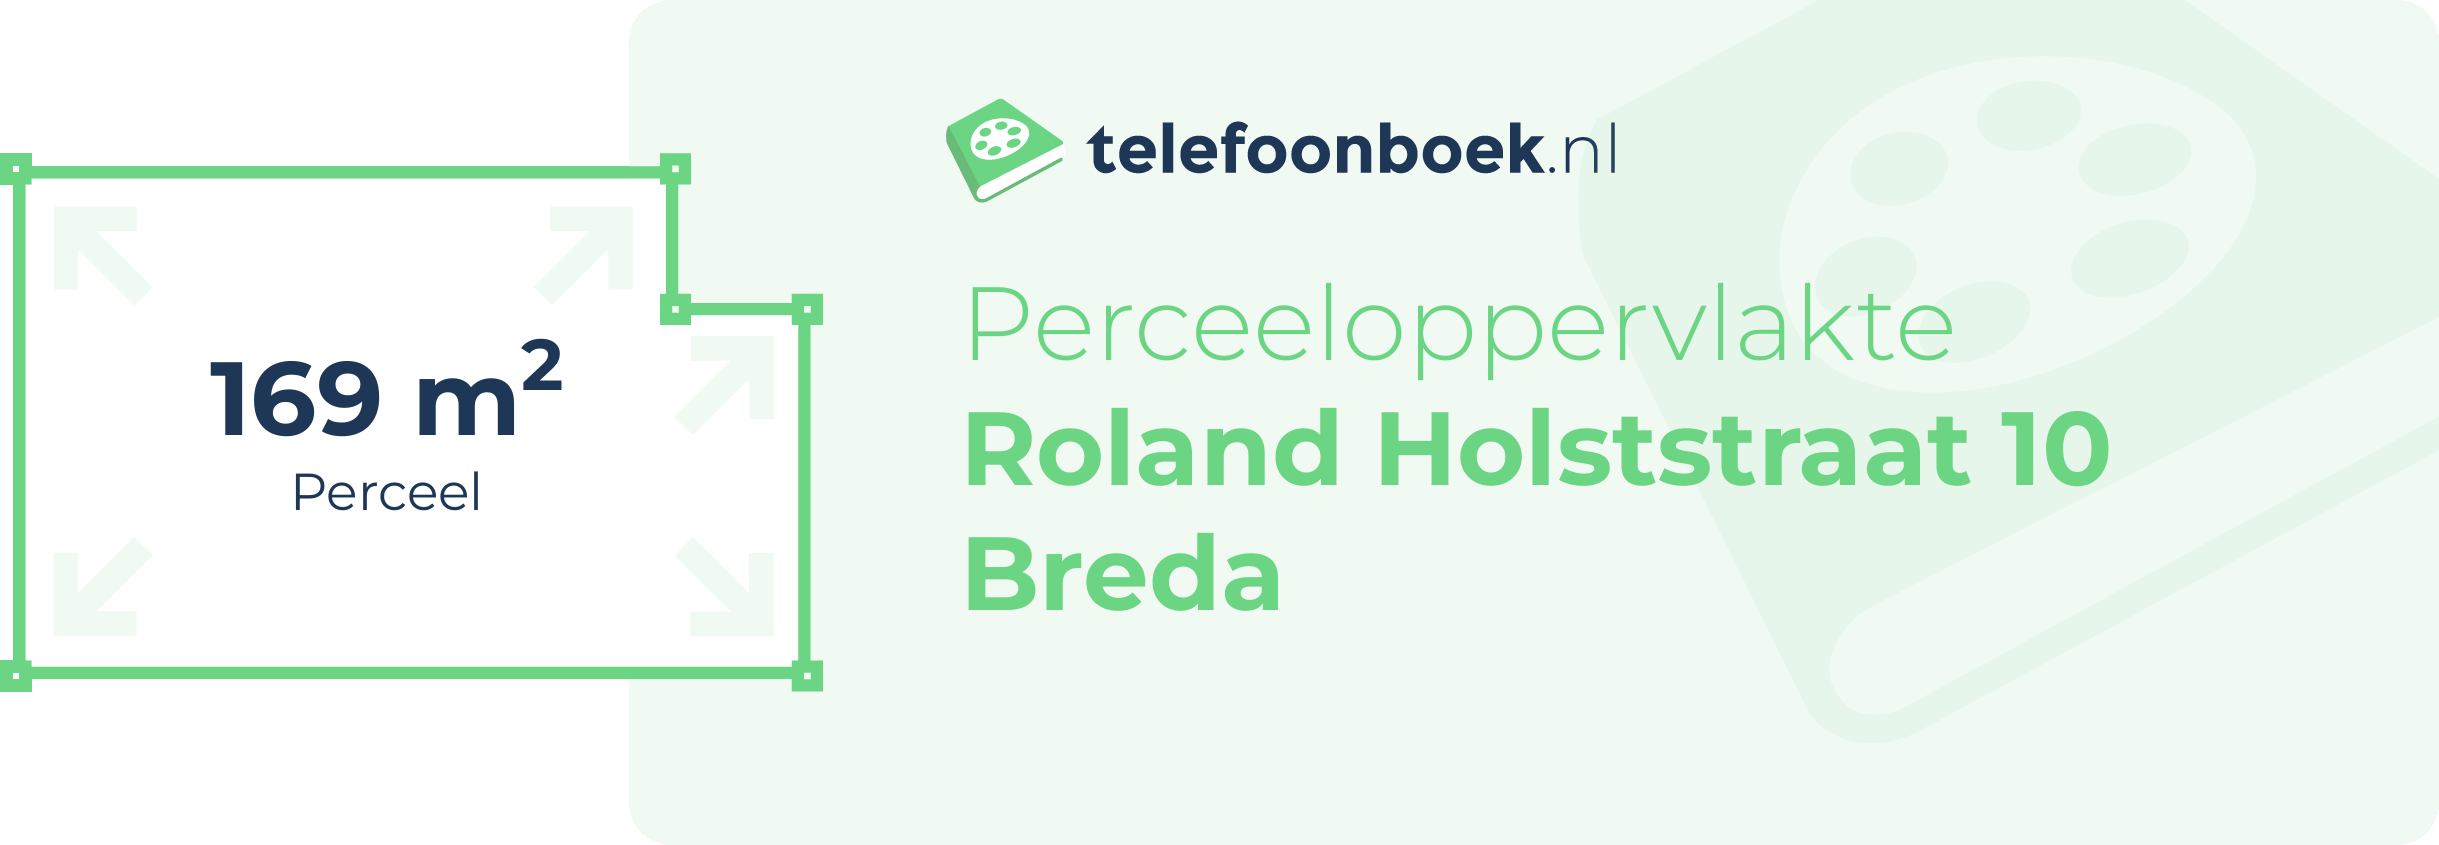 Perceeloppervlakte Roland Holststraat 10 Breda